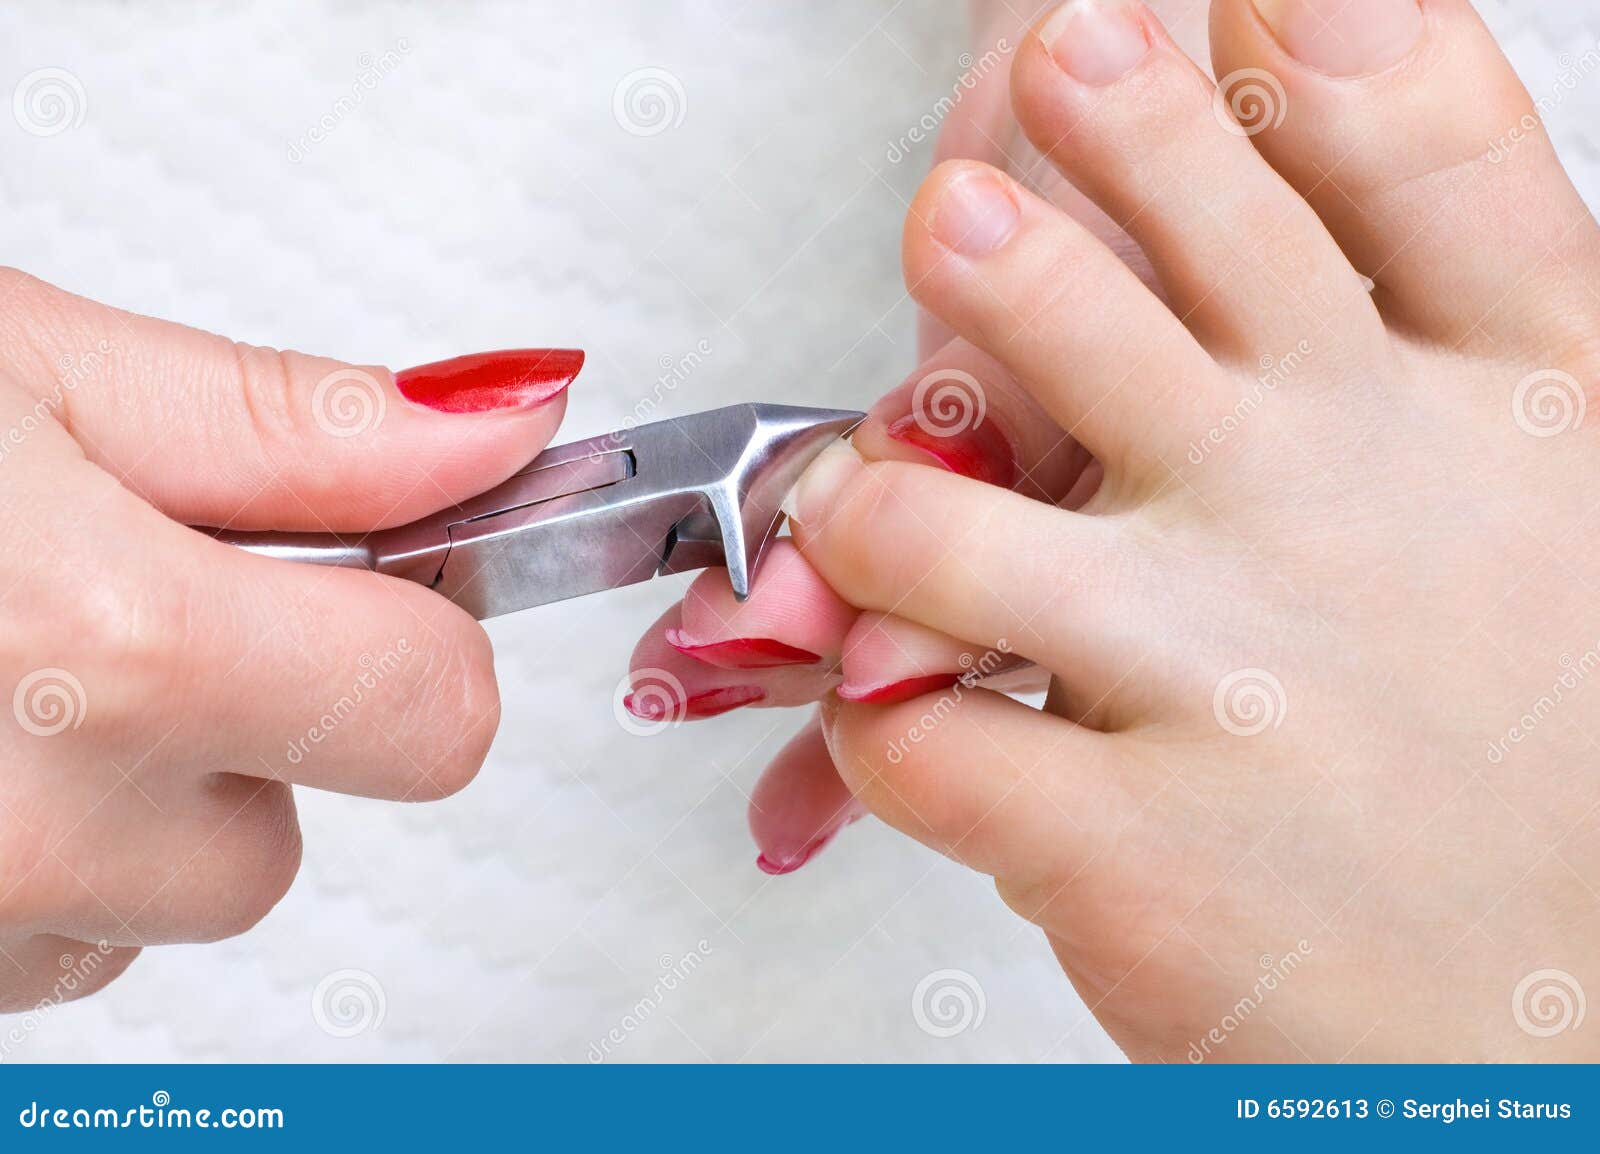 Ногтями можно резать. Обрезной маникюр. Стрижка ногтей. Правильная стрижка ногтей. Правильная стрижка ногтей на ногах.